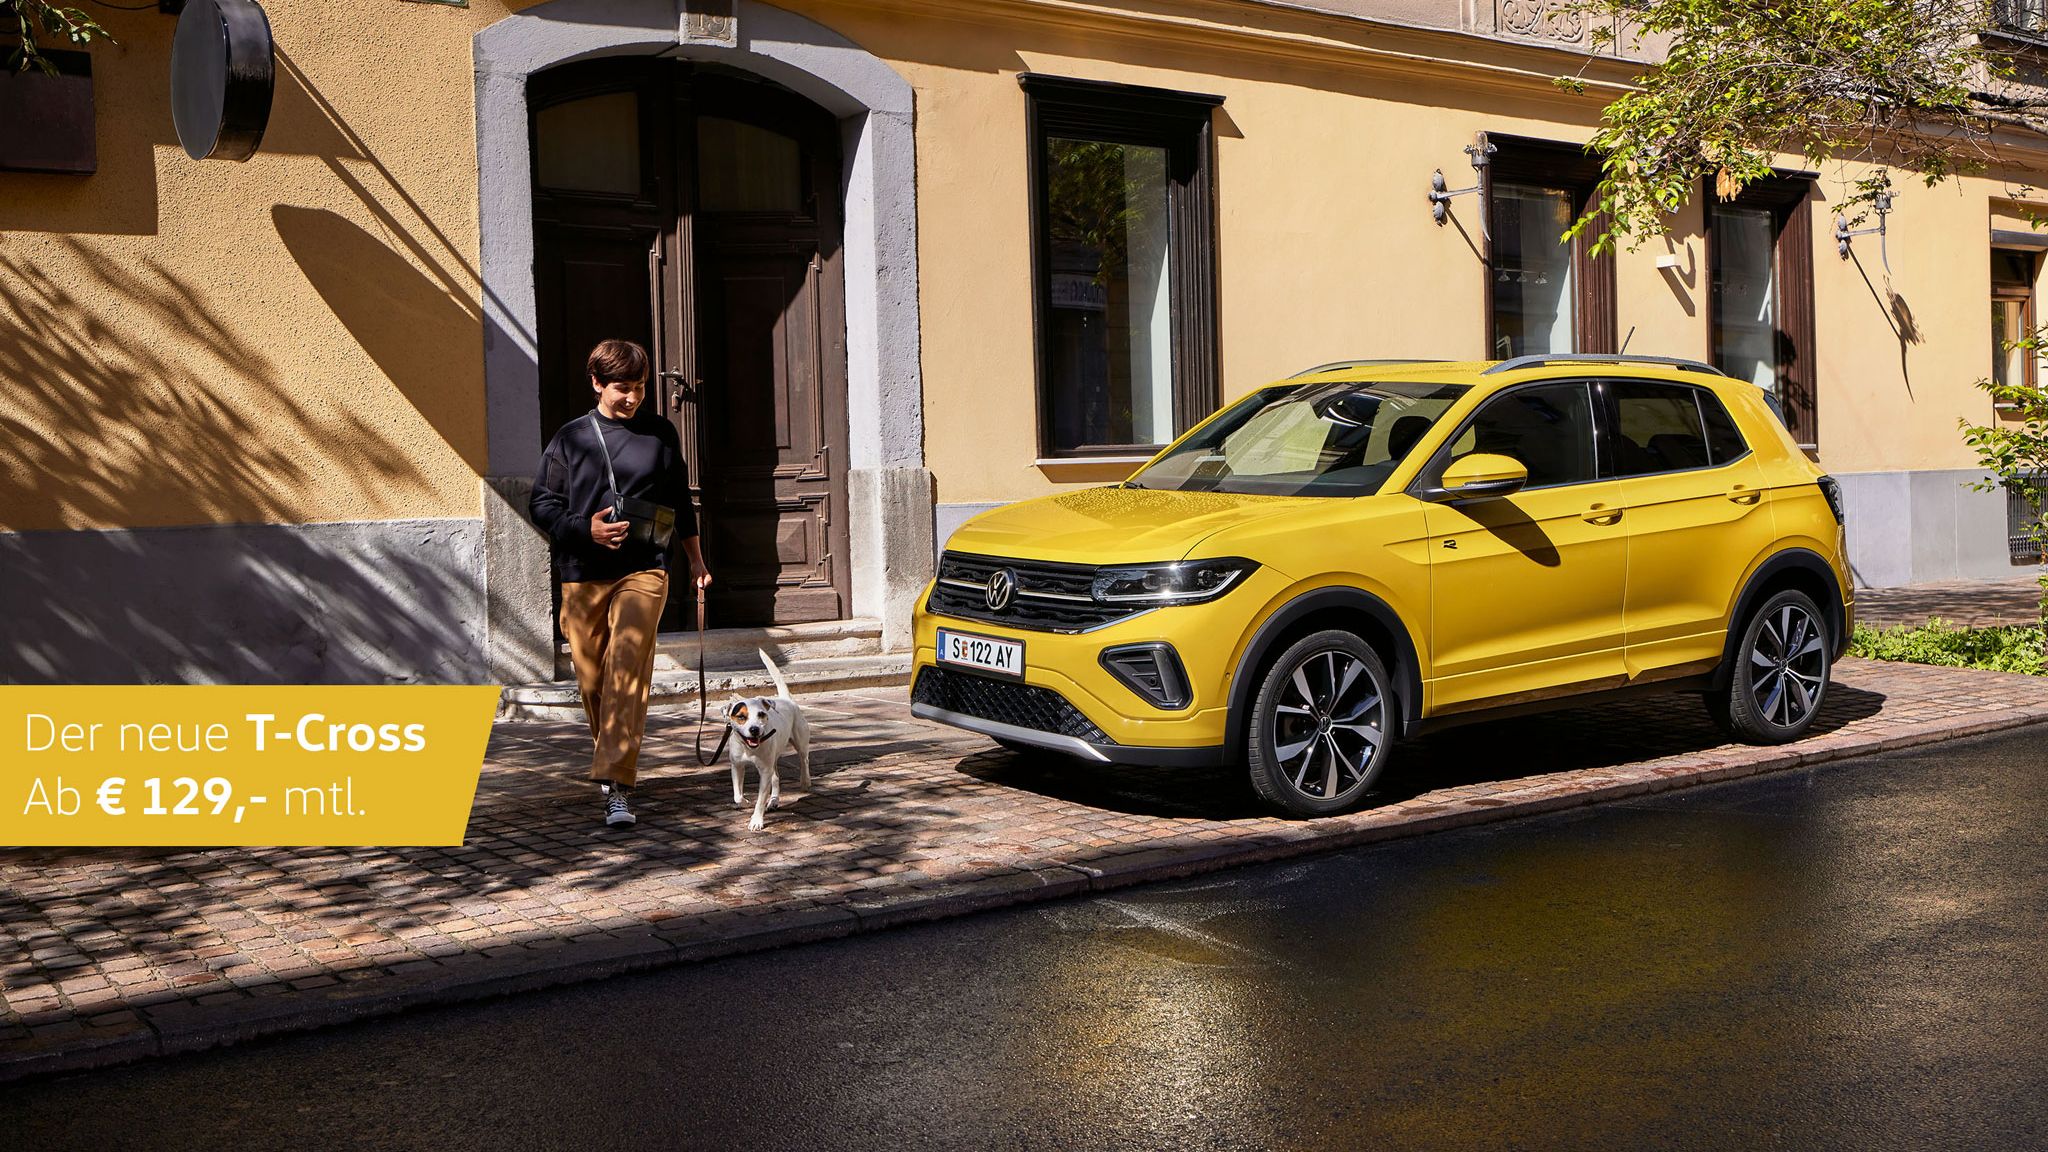 Ein gelber VW T-Cross steht geparkt am Straßenrand. Eine Frau läuft mit ihrem Hund vor dem Auto entlang. Mit auf dem Bild steht die monatliche Leasingrate. 